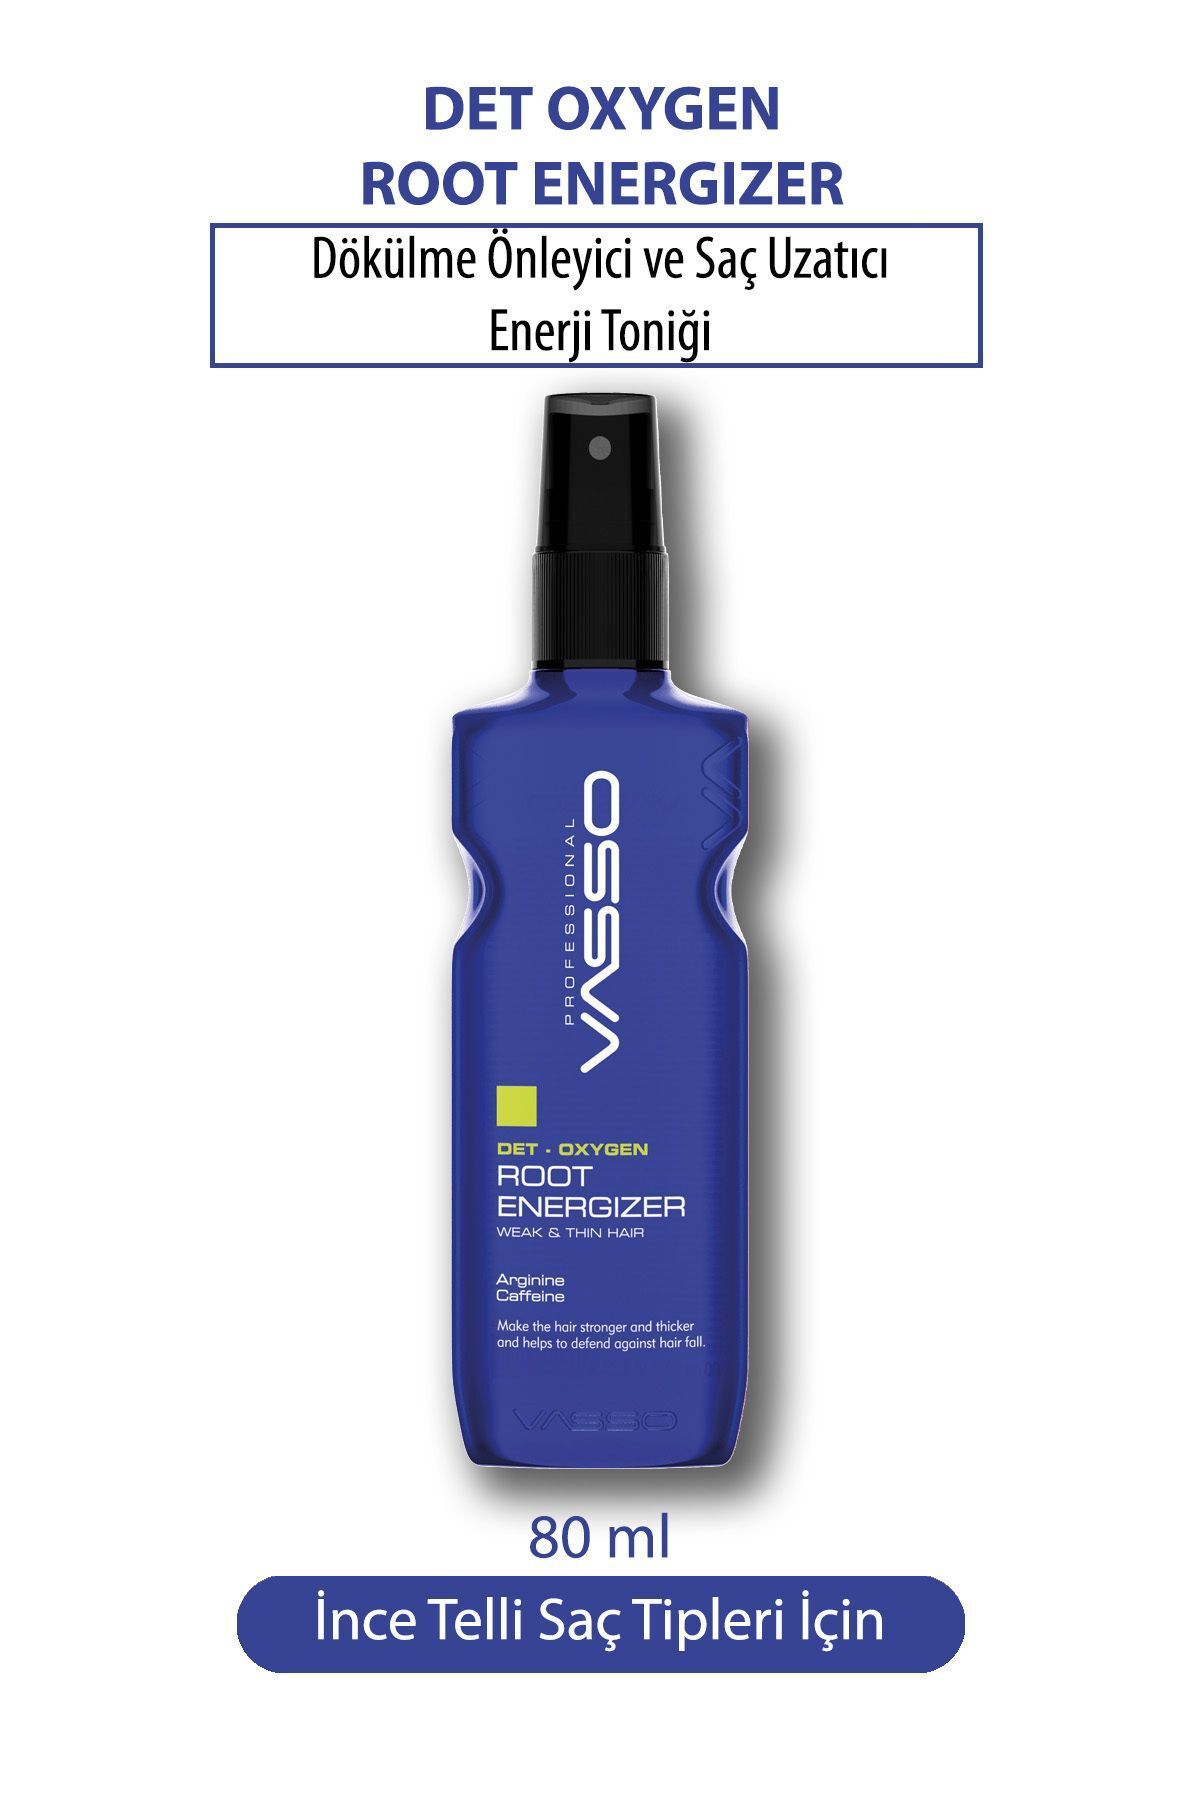 VASSO WOMEN Dökülme Önleyici Ve Hızlı Saç Uzatıcı Saç Toniği Güçlendirici Serum Root Energizer 80 ml